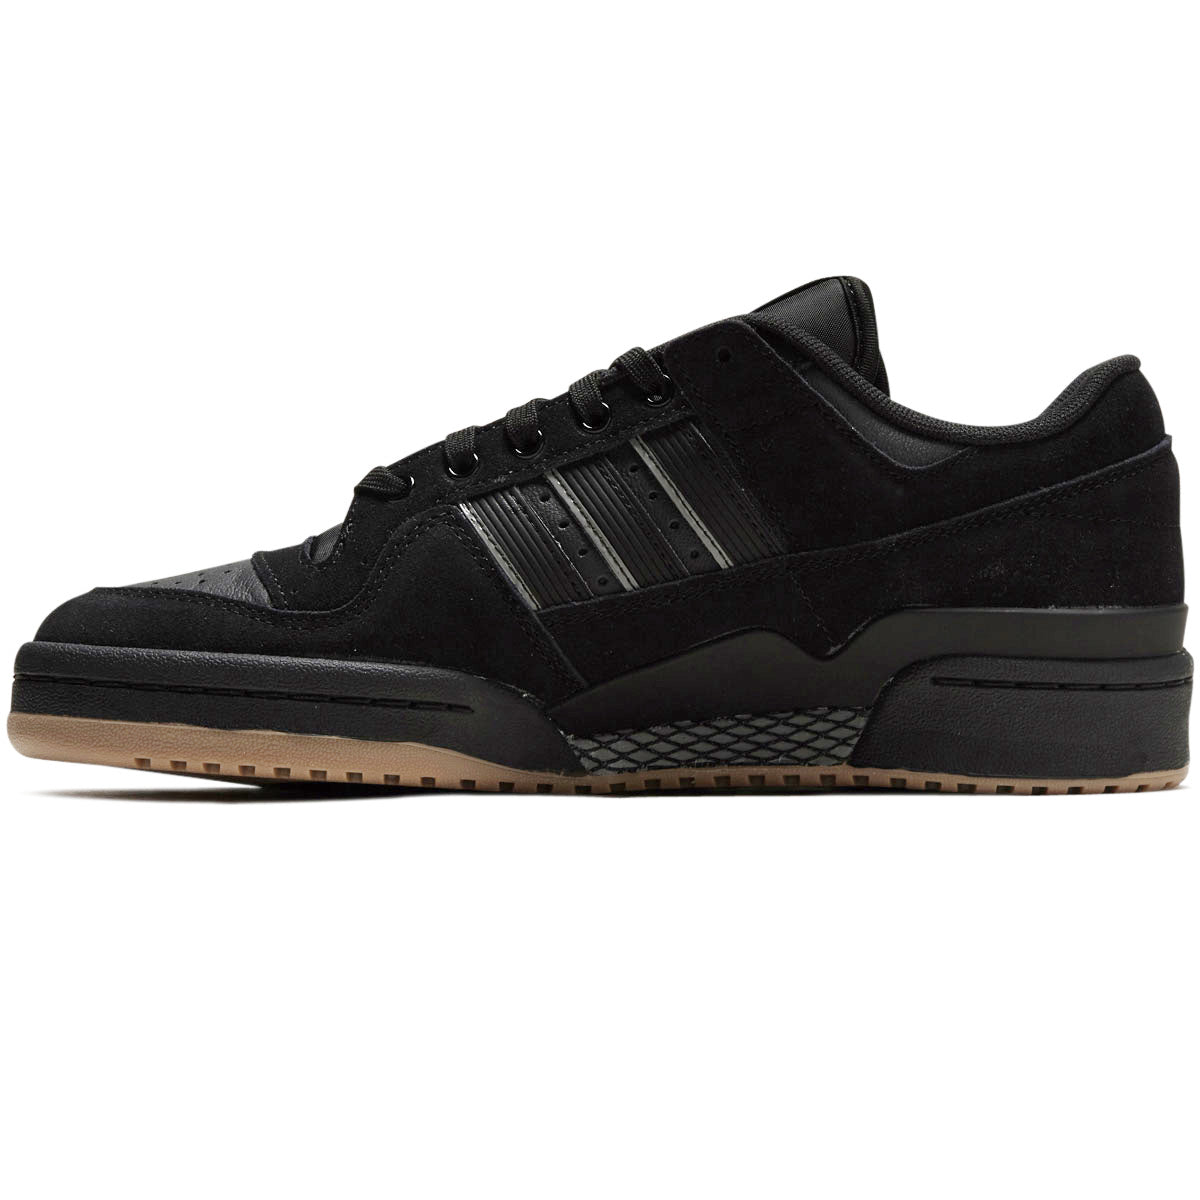 Adidas Forum 84 Low Adv Shoes - Core Black/Carbon/Grey image 2